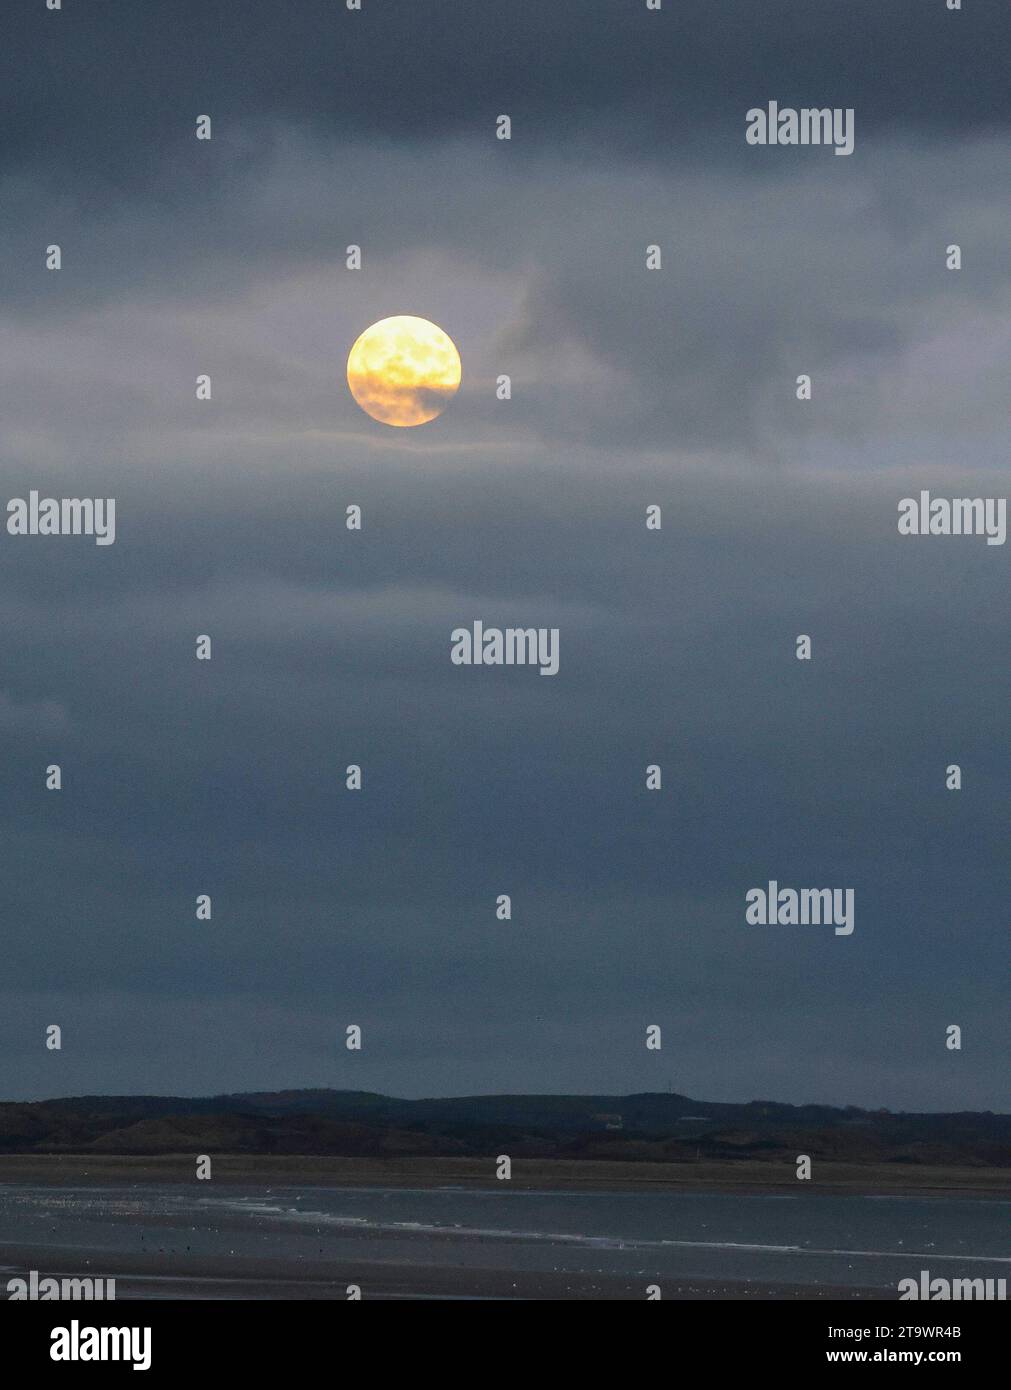 Newcastle, comté de Down, Irlande du Nord, Royaume-Uni. 27 novembre 2023. Lune de novembre ou Beaver Moon visible dans un ciel dégagé au-dessus de la côte du comté de Down. La lune traverse les nuages de fin d'après-midi à 16,21 GMT. Crédit : CAZIMB/Alamy Live News. Banque D'Images